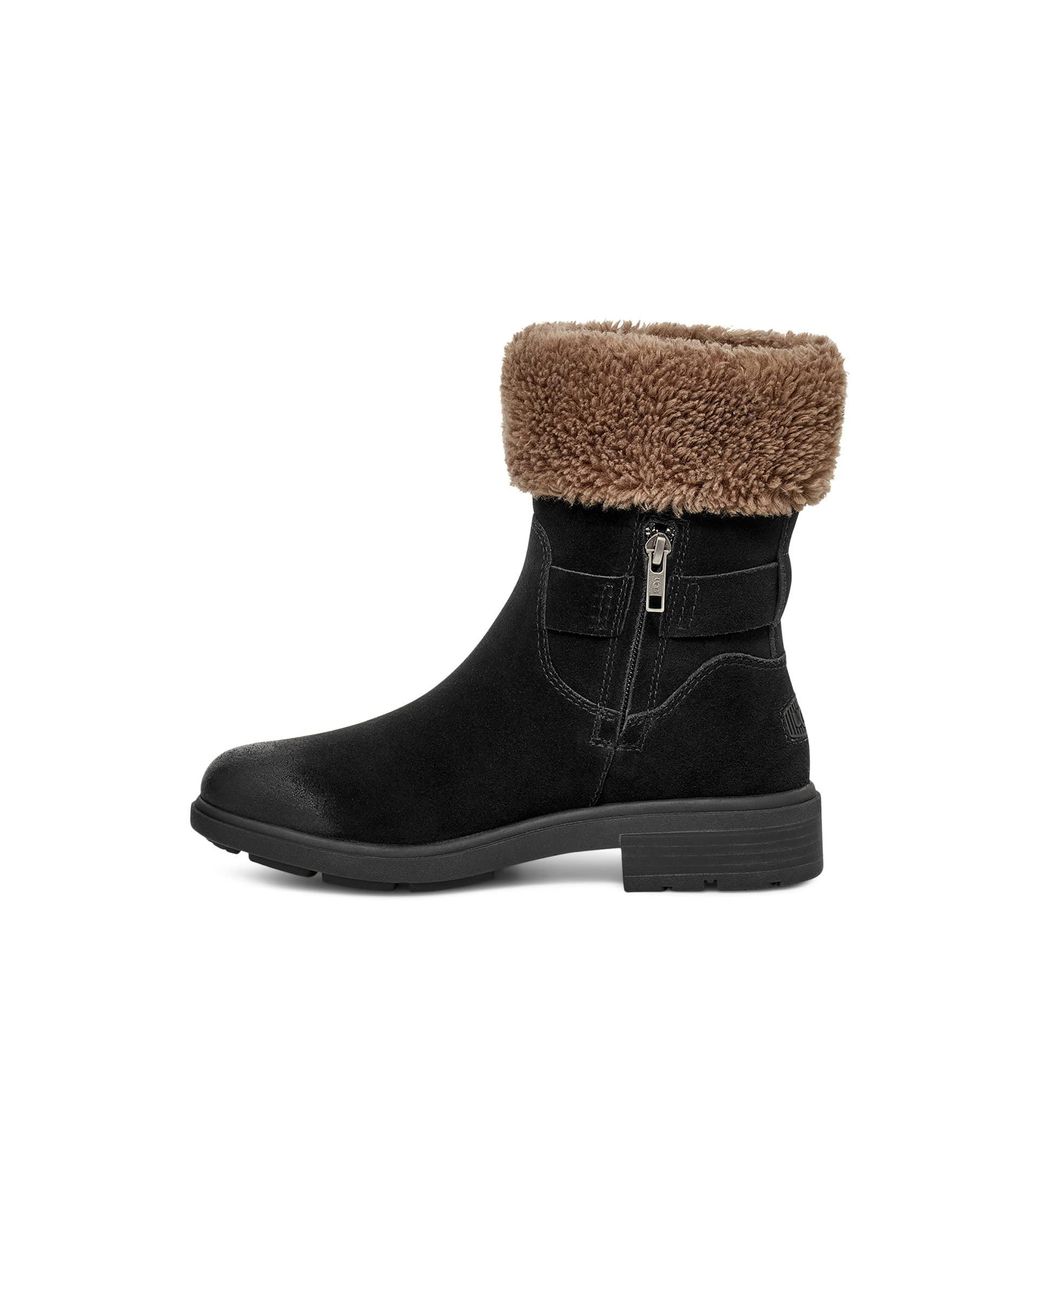 UGG Harrison Cuff Fashion Boot in Black | Lyst